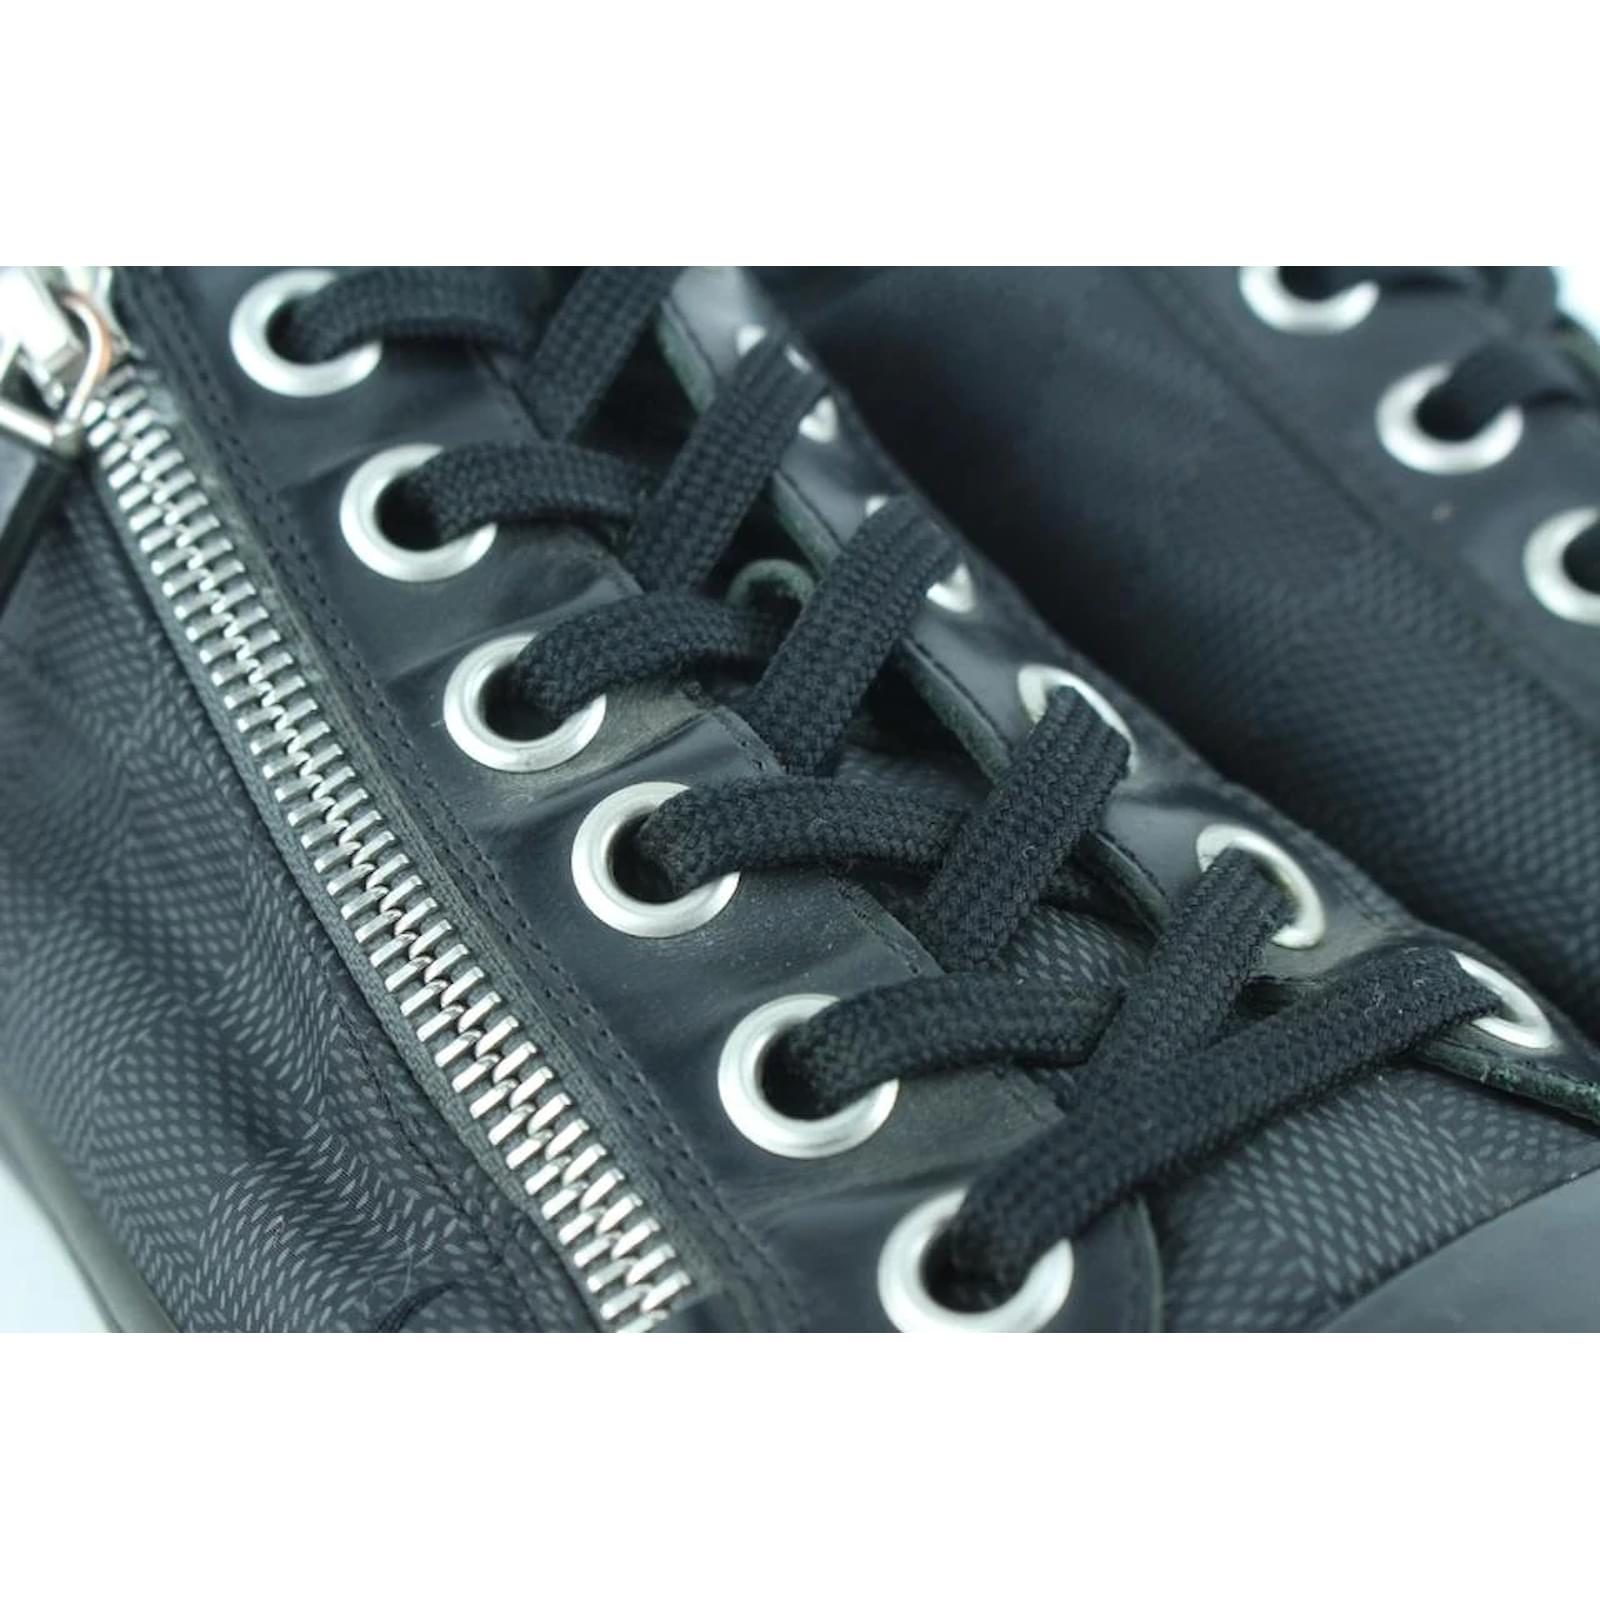 Louis Vuitton Men's 7 US Damier Graphite Nylon Punchy Low Top Sneaker –  Bagriculture